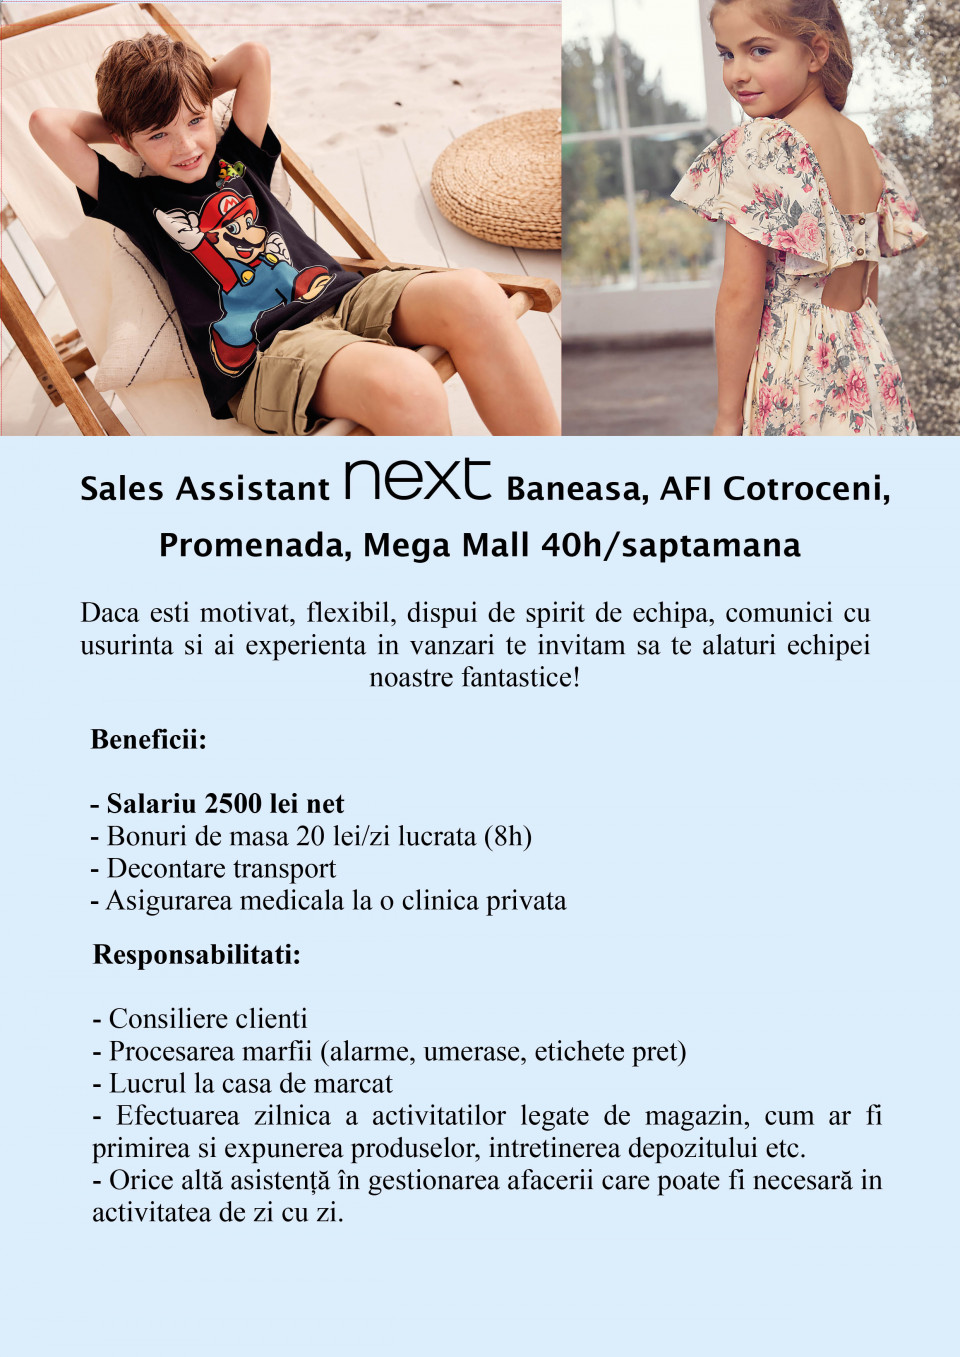 Sales assistant - Next Baneasa, AFI, Mega Mall, Promenada